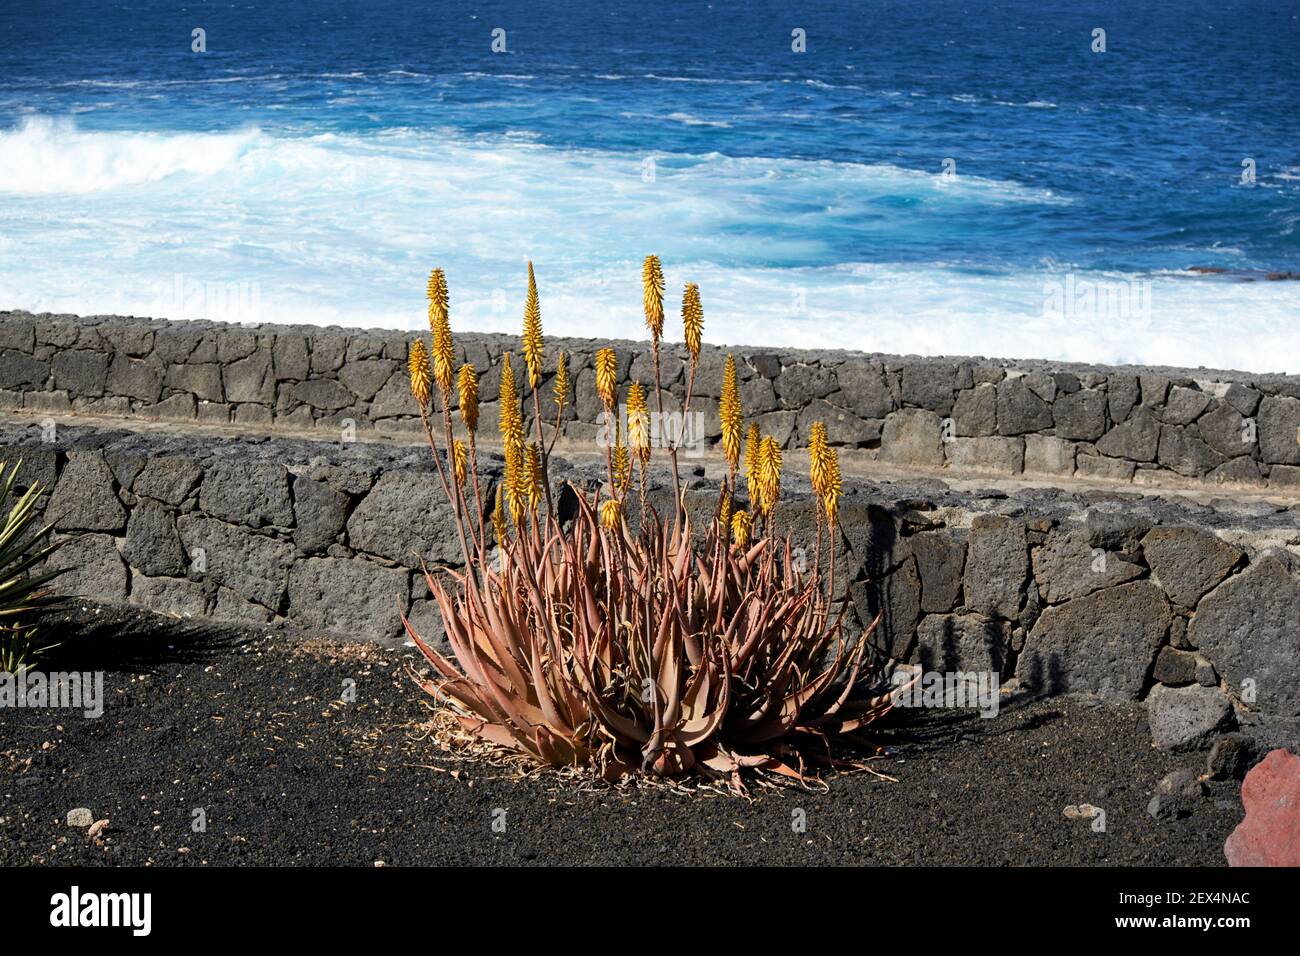 plante à fleurs d'aloès poussant dans un jardin de cactus en volcanique Pierres près de la mer à Lanzarote îles Canaries Espagne Banque D'Images